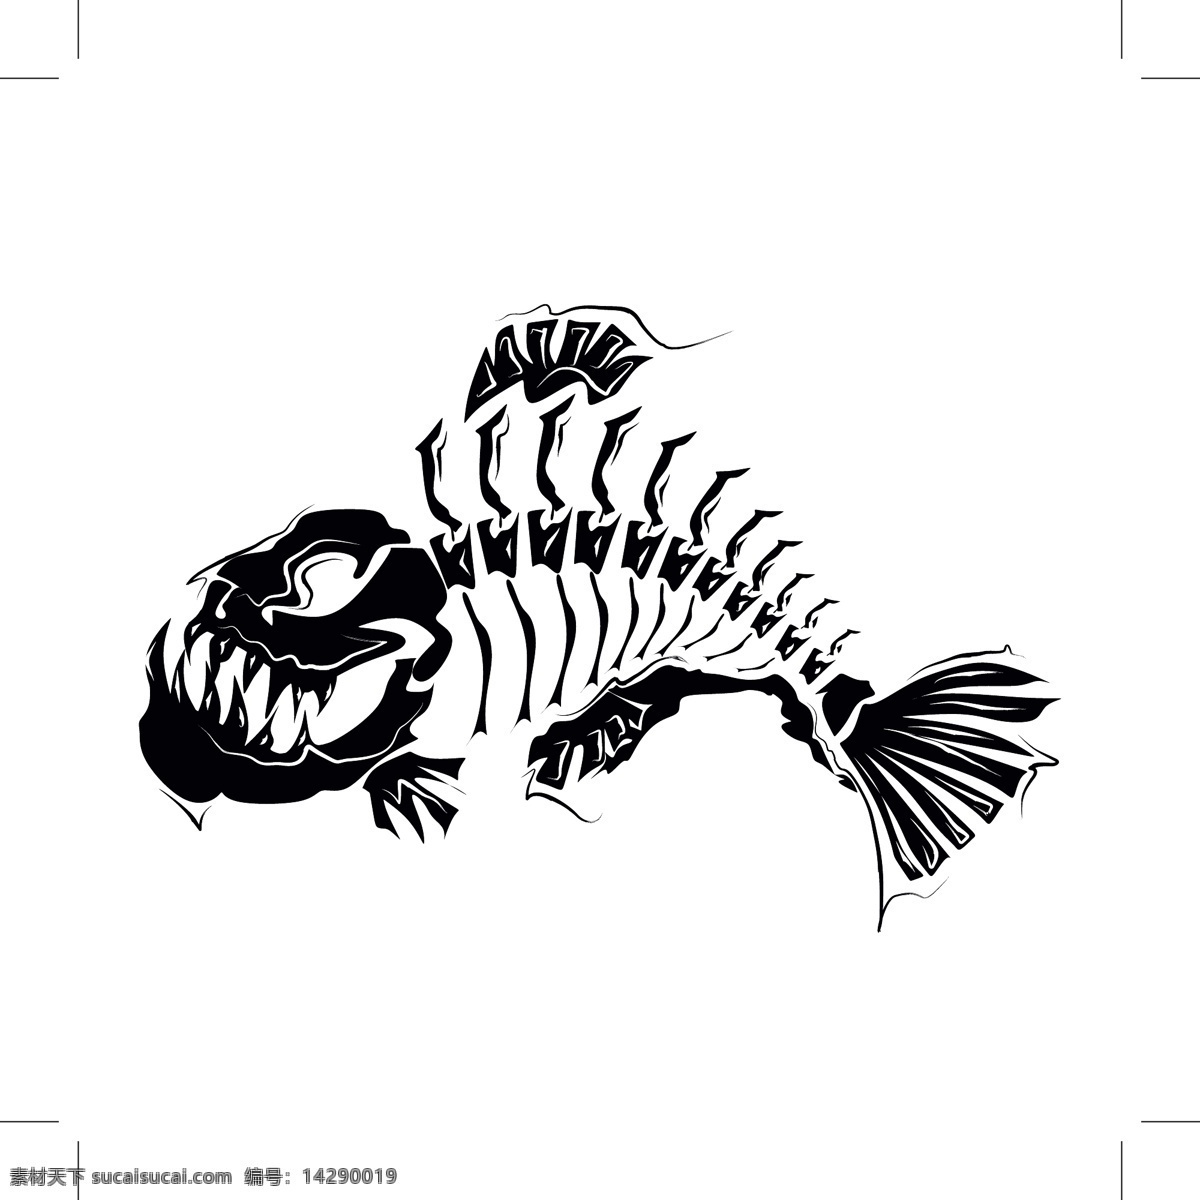 食人鱼骨头 矢量动物 卡通动物 动物插画 陆地动物 生物世界 矢量素材 白色